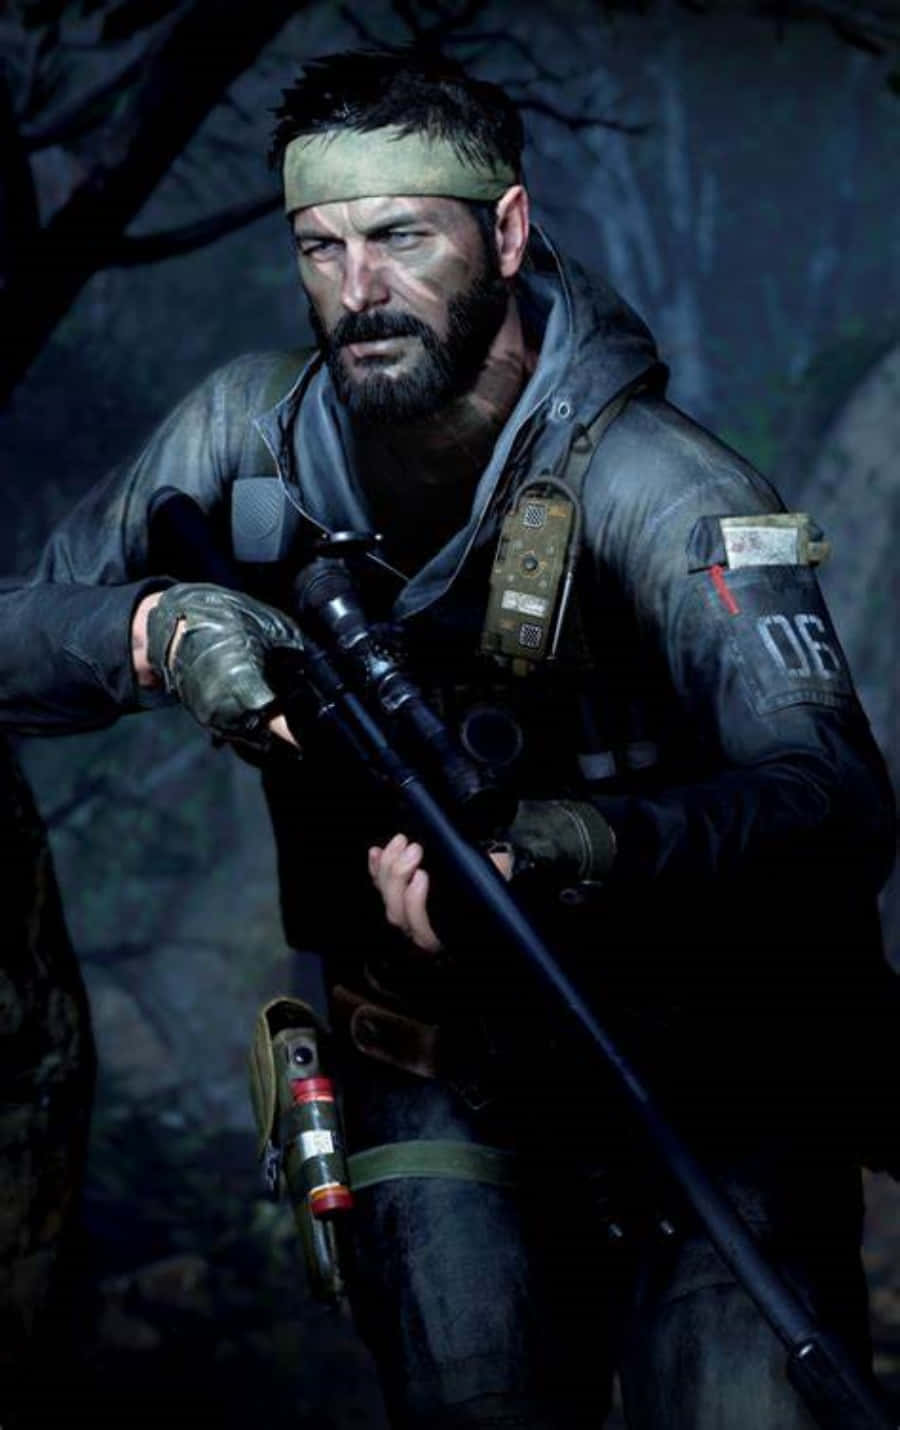 Machensie Sich Bereit Für Call Of Duty: Black Ops Mit Ihrem Brandneuen Iphone. Wallpaper